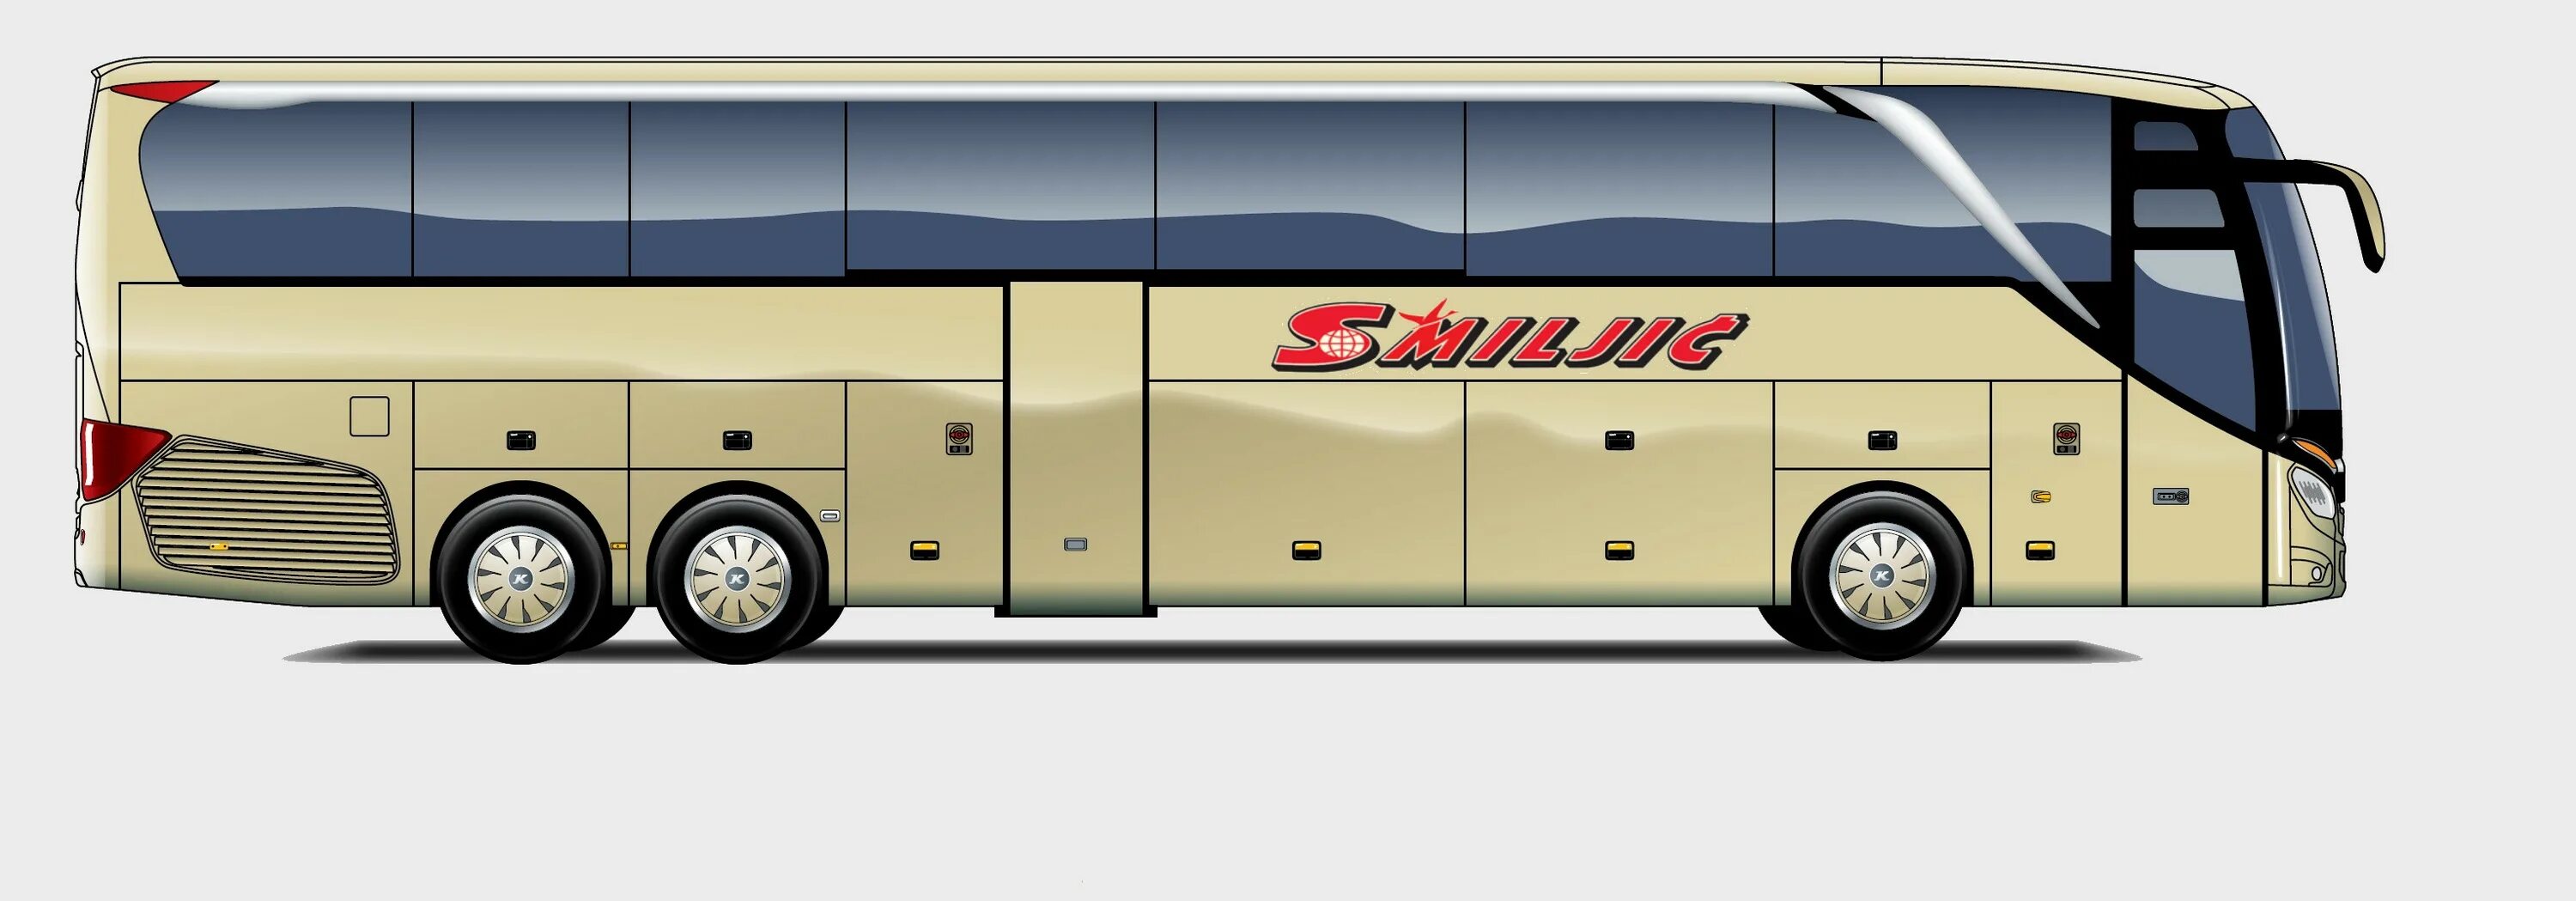 Какая длина автобуса. Setra s416hdh. Автобус Yutong длина. Setra 416 HDH габариты кузова. Setra s 517 HDH.